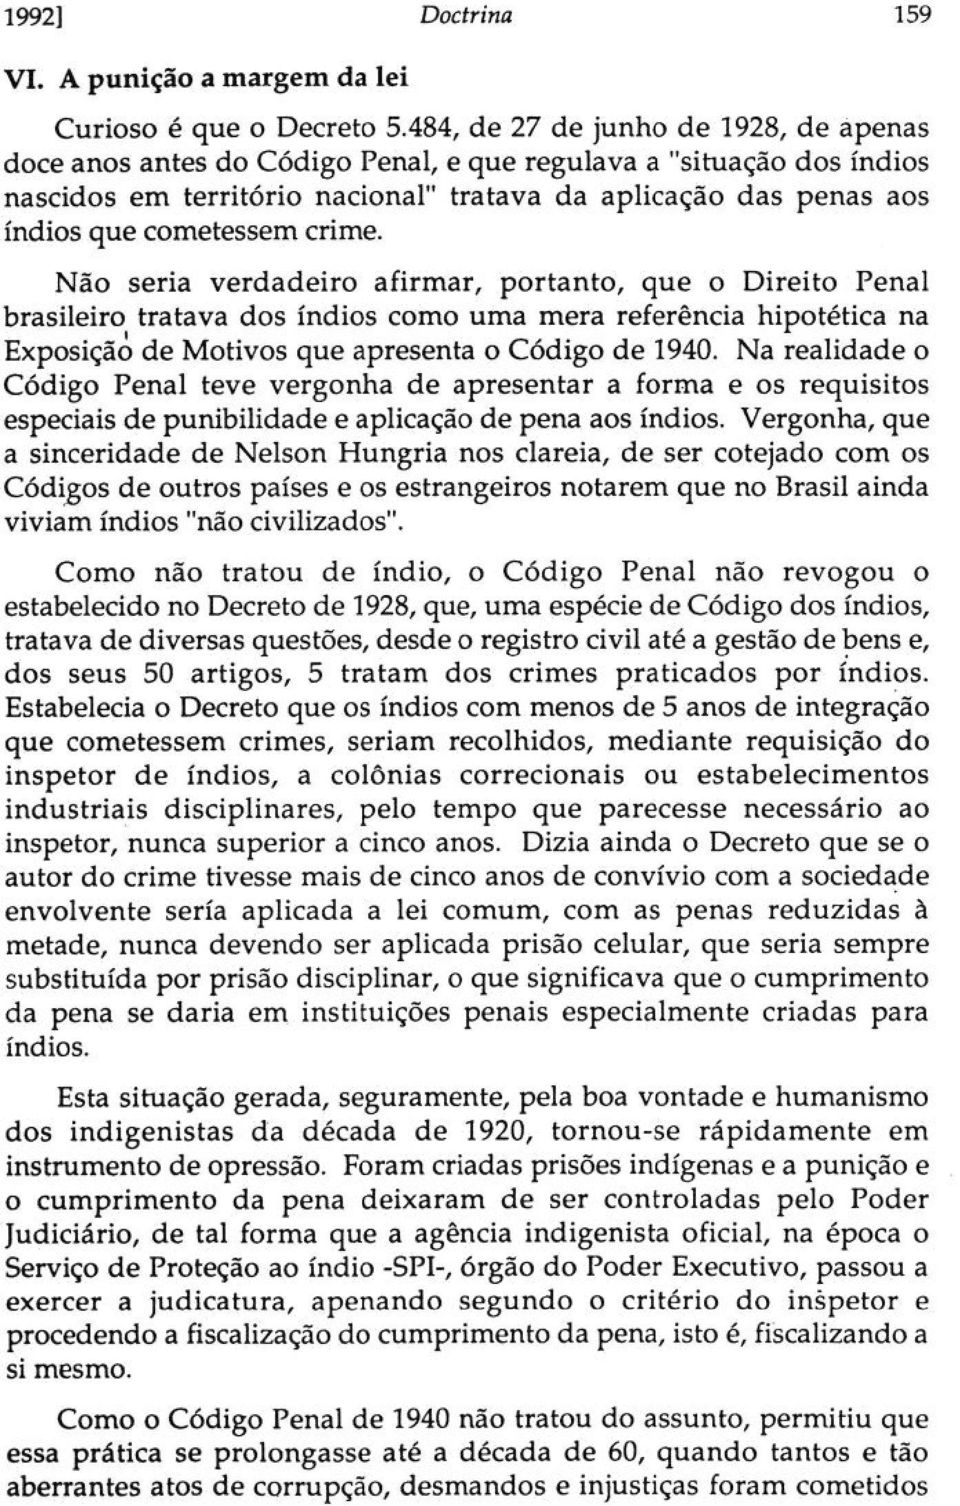 crime. Não seria verdadeiro afirmar, portanto, que o Direito Penal brasileiro tratava dos índios como uma mera referência hipotética na Exposição de Motivos que apresenta o Código de 1940.